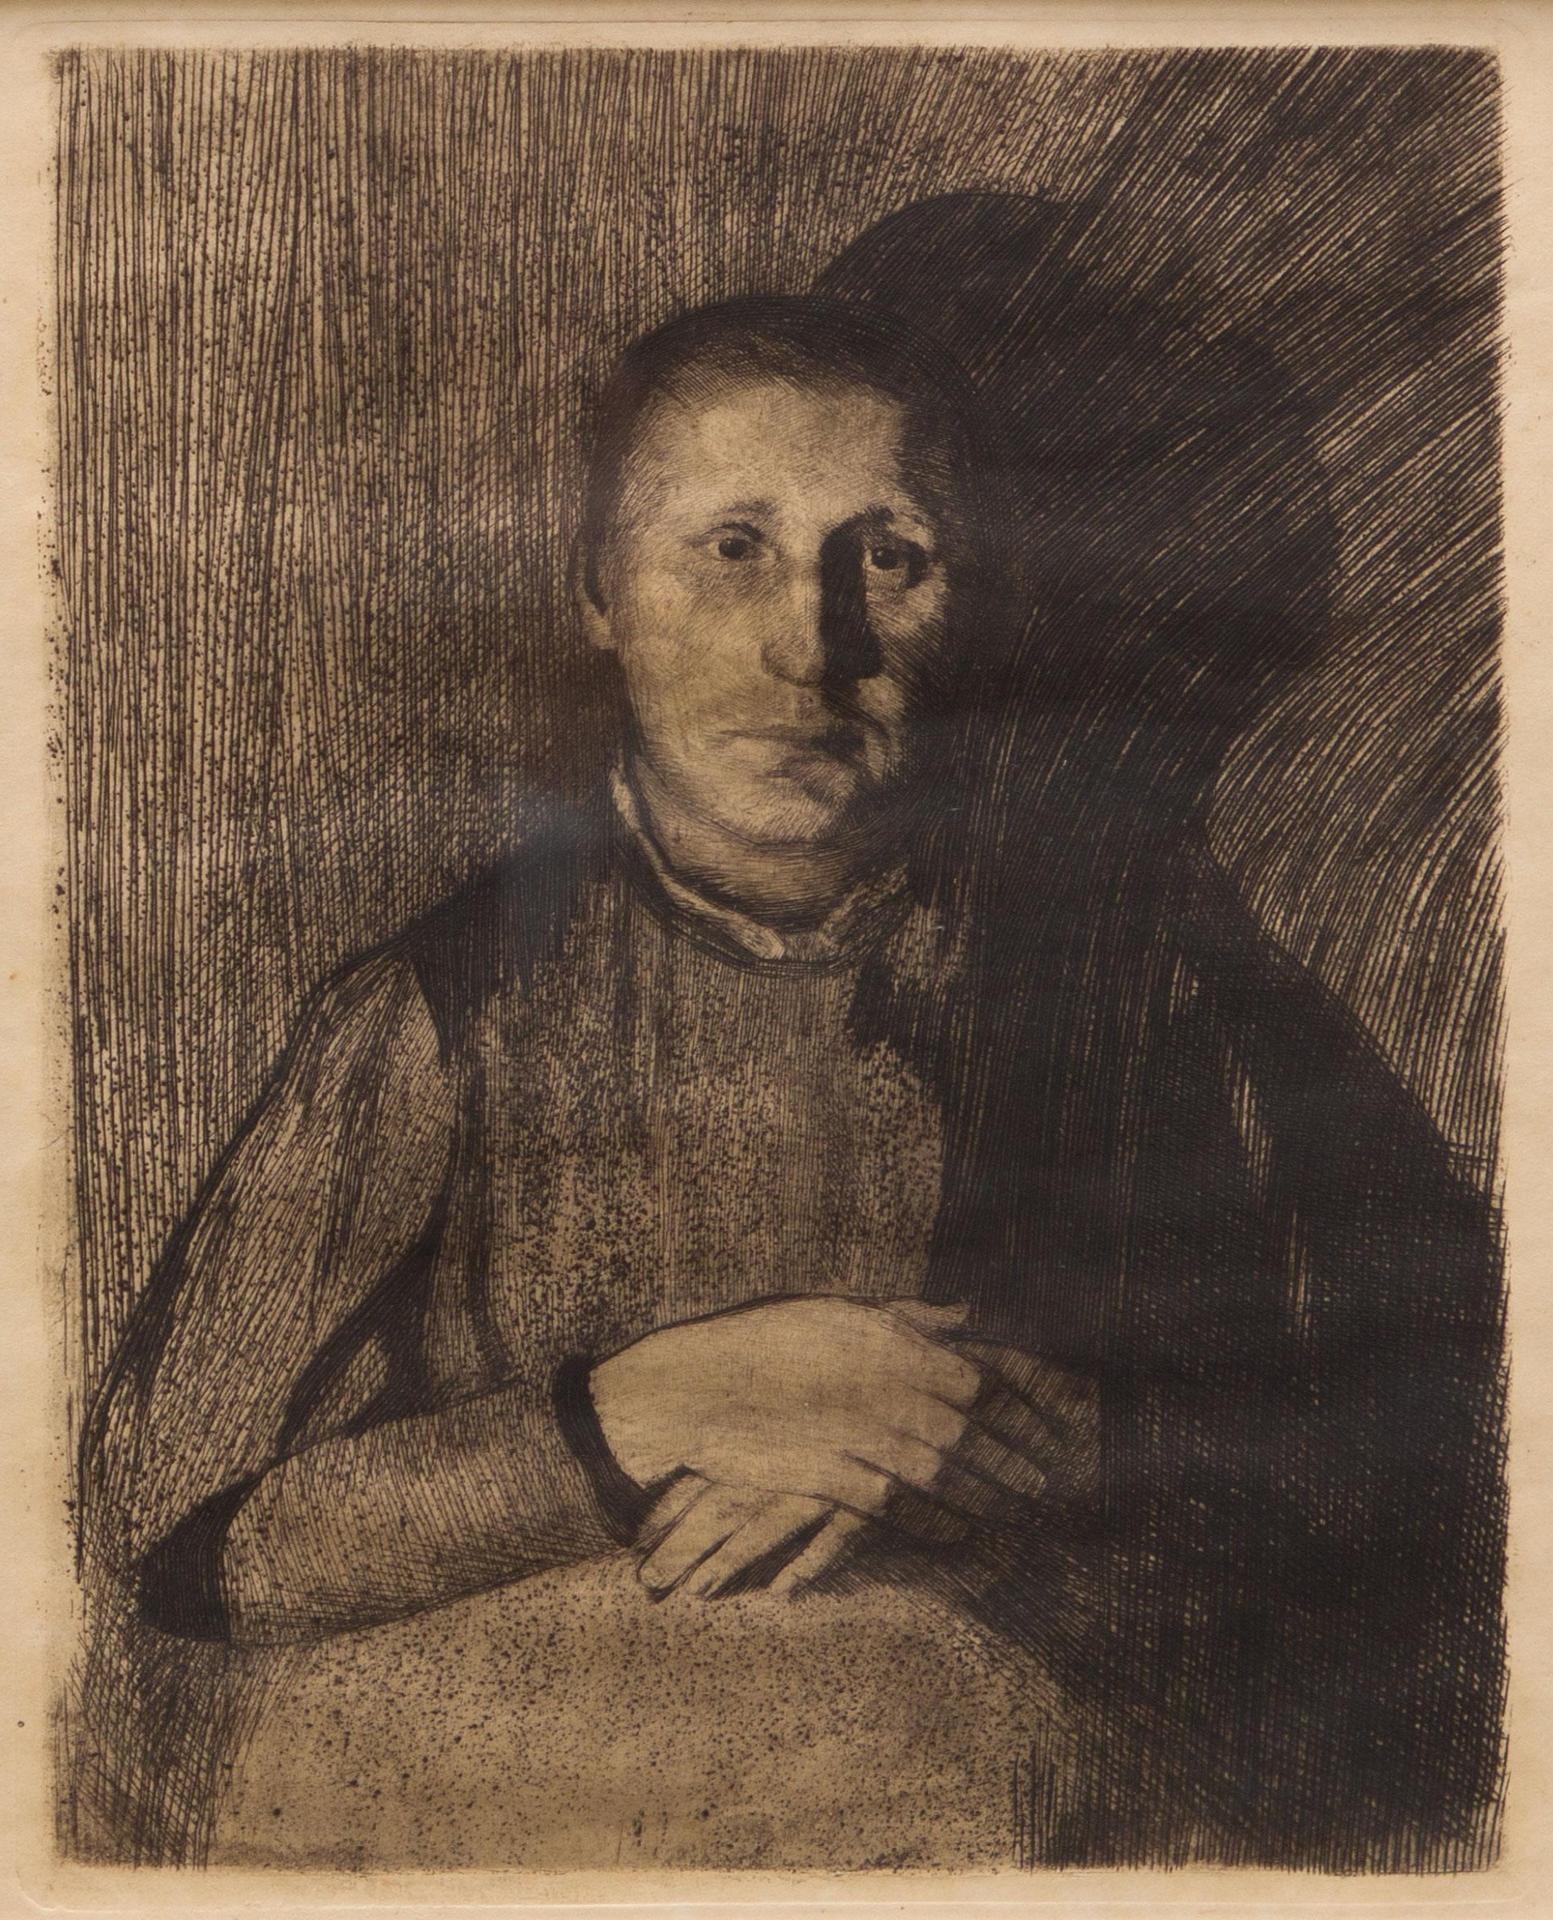 Käthe Kollwitz (1867-1945) - Woman with folded hands, 1898-1899